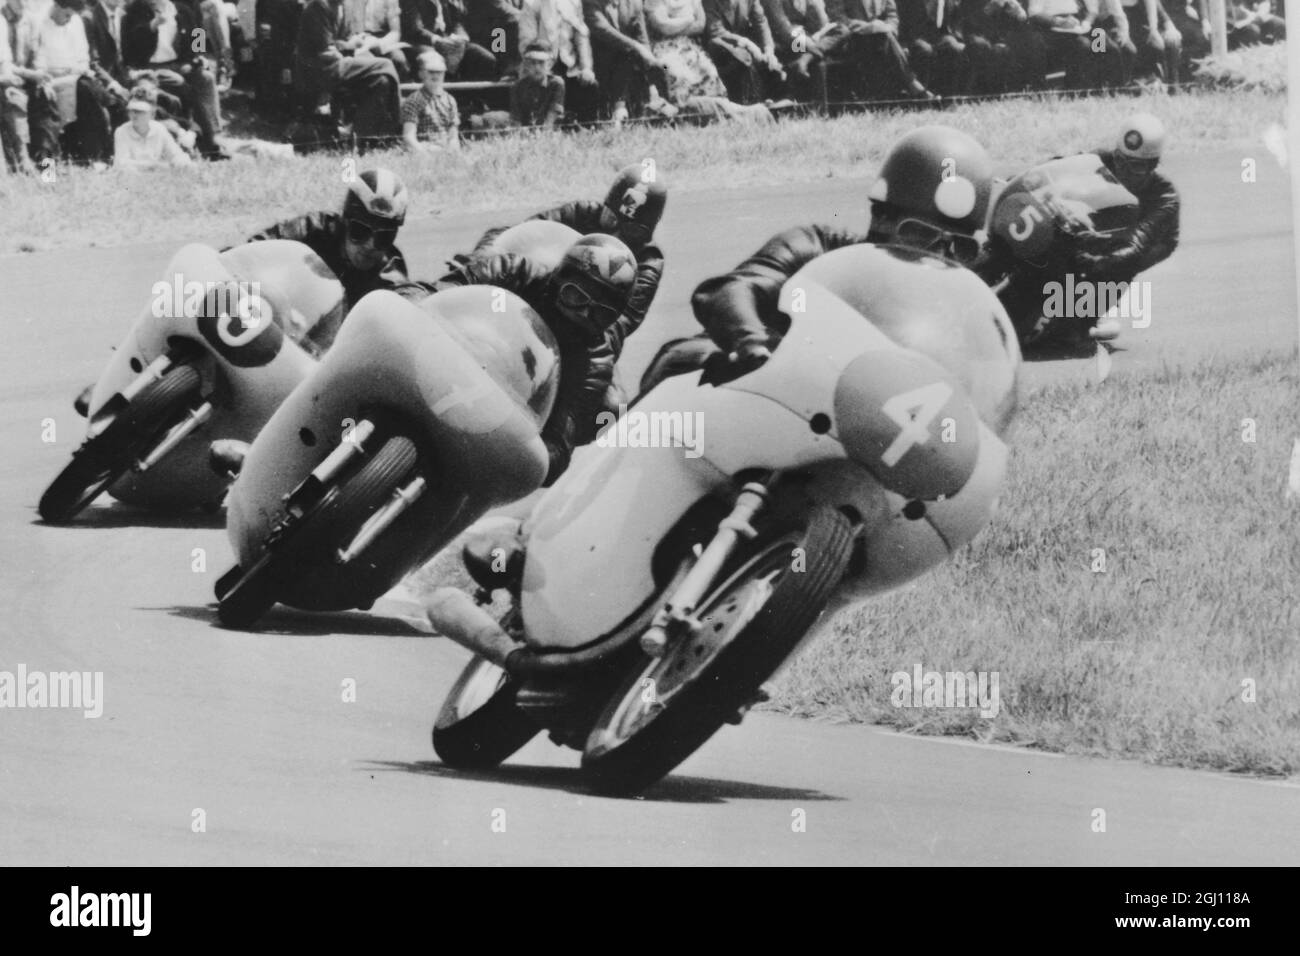 Eine Gruppe von Fahrern unter der Führung des Italieners Vittorio Brambilla auf einer Bianchi, durchfährt eine Haarnadelkurve während der 350 ccm großen Veranstaltung der niederländischen TT-Rennen, die am 24. Juni 1961 in Assen, Holland, stattfand. Dieses Ereignis wurde von Gary Hocking, aus Rhodesien, ON und dem italienischen MV gewonnen. Hocking gewann auch die 500cc Veranstaltung, auch auf einem MV. 26. JUNI 1961 Stockfoto